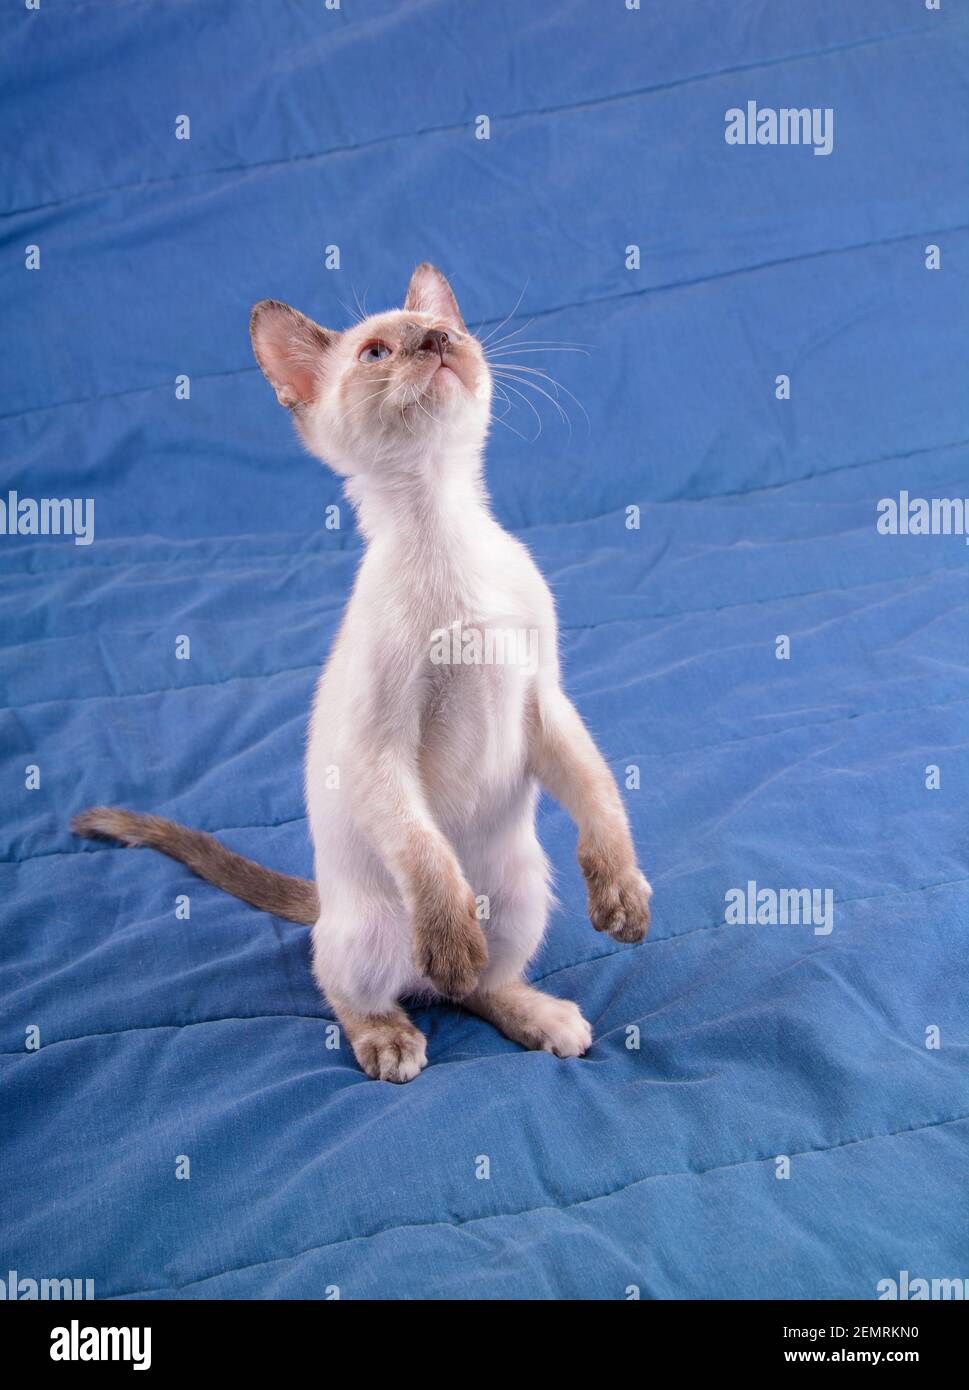 Adorable tortie point chaton siamois debout sur deux jambes sur une couverture bleue, regardant au-dessus d'elle Banque D'Images